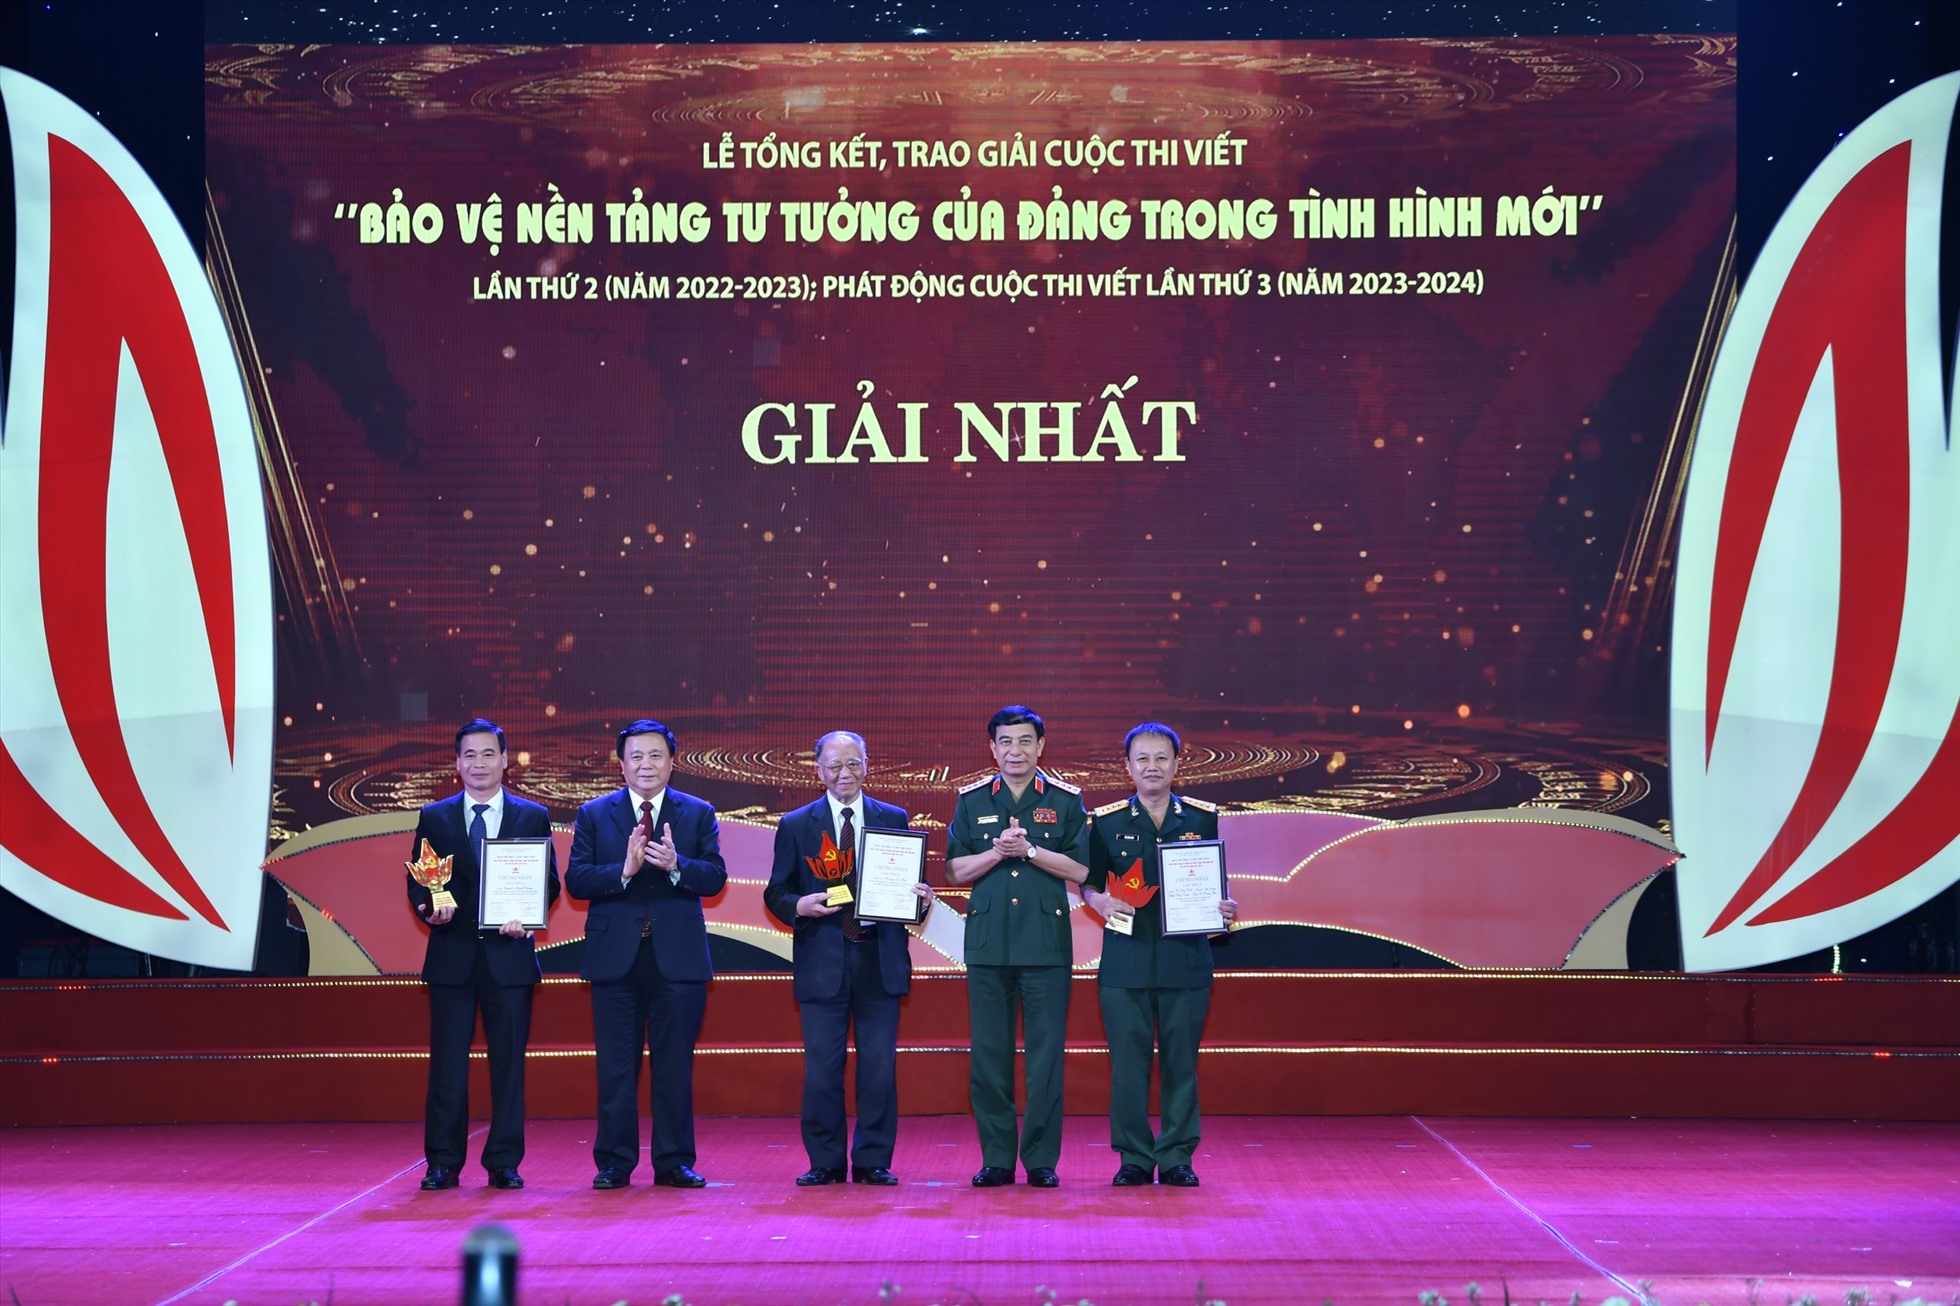 Đồng chí Đại tướng Phan Văn Giang và đồng chí Nguyễn Xuân Thắng trao thưởng cho các tác giả đoạt giải Nhất của Cuộc thi viết “Bảo vệ nền tảng tư tưởng của Đảng trong tình hình mới” lần thứ 2 (năm 2022-2023). Ảnh: Ái Vân